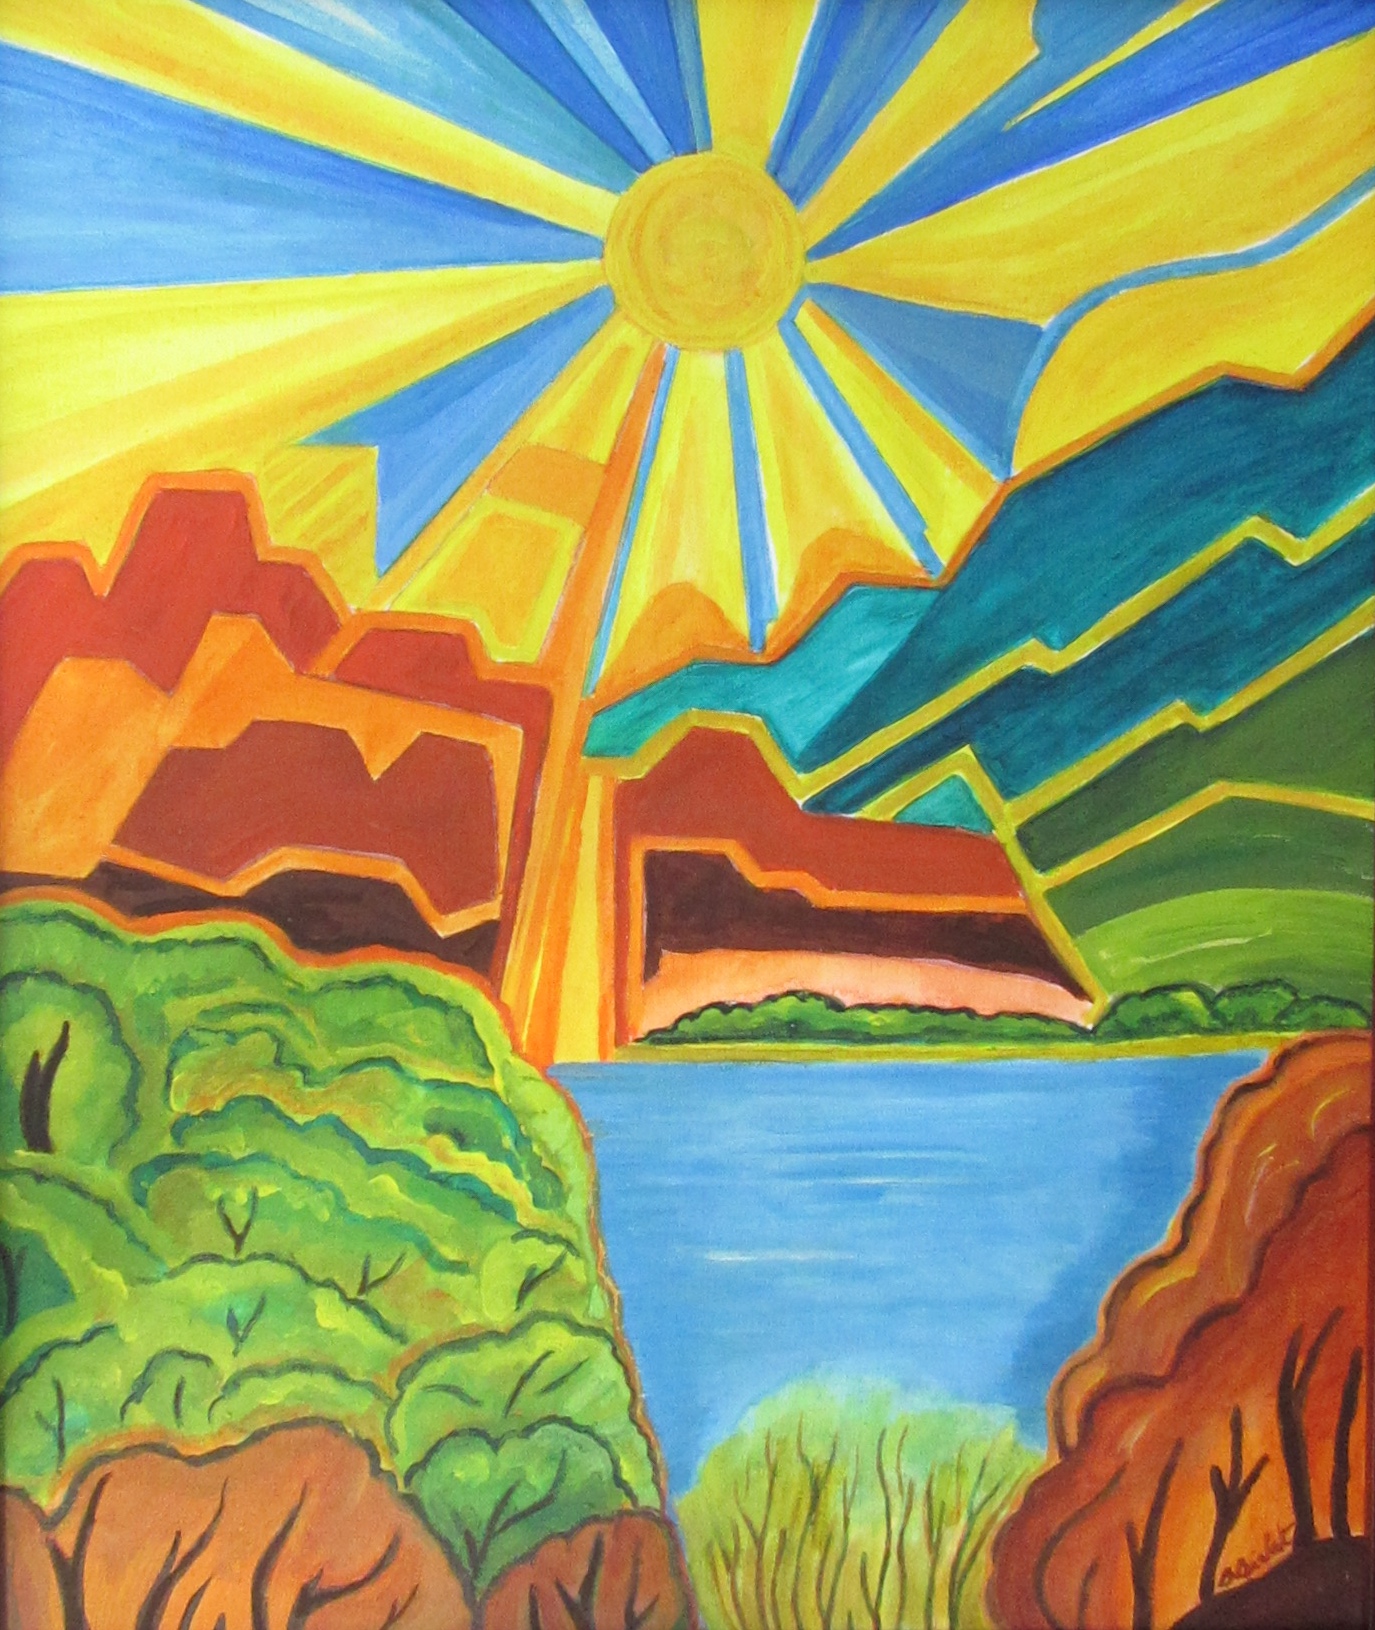 Sunflower Sky, acrylic on canvas, 20 x 14